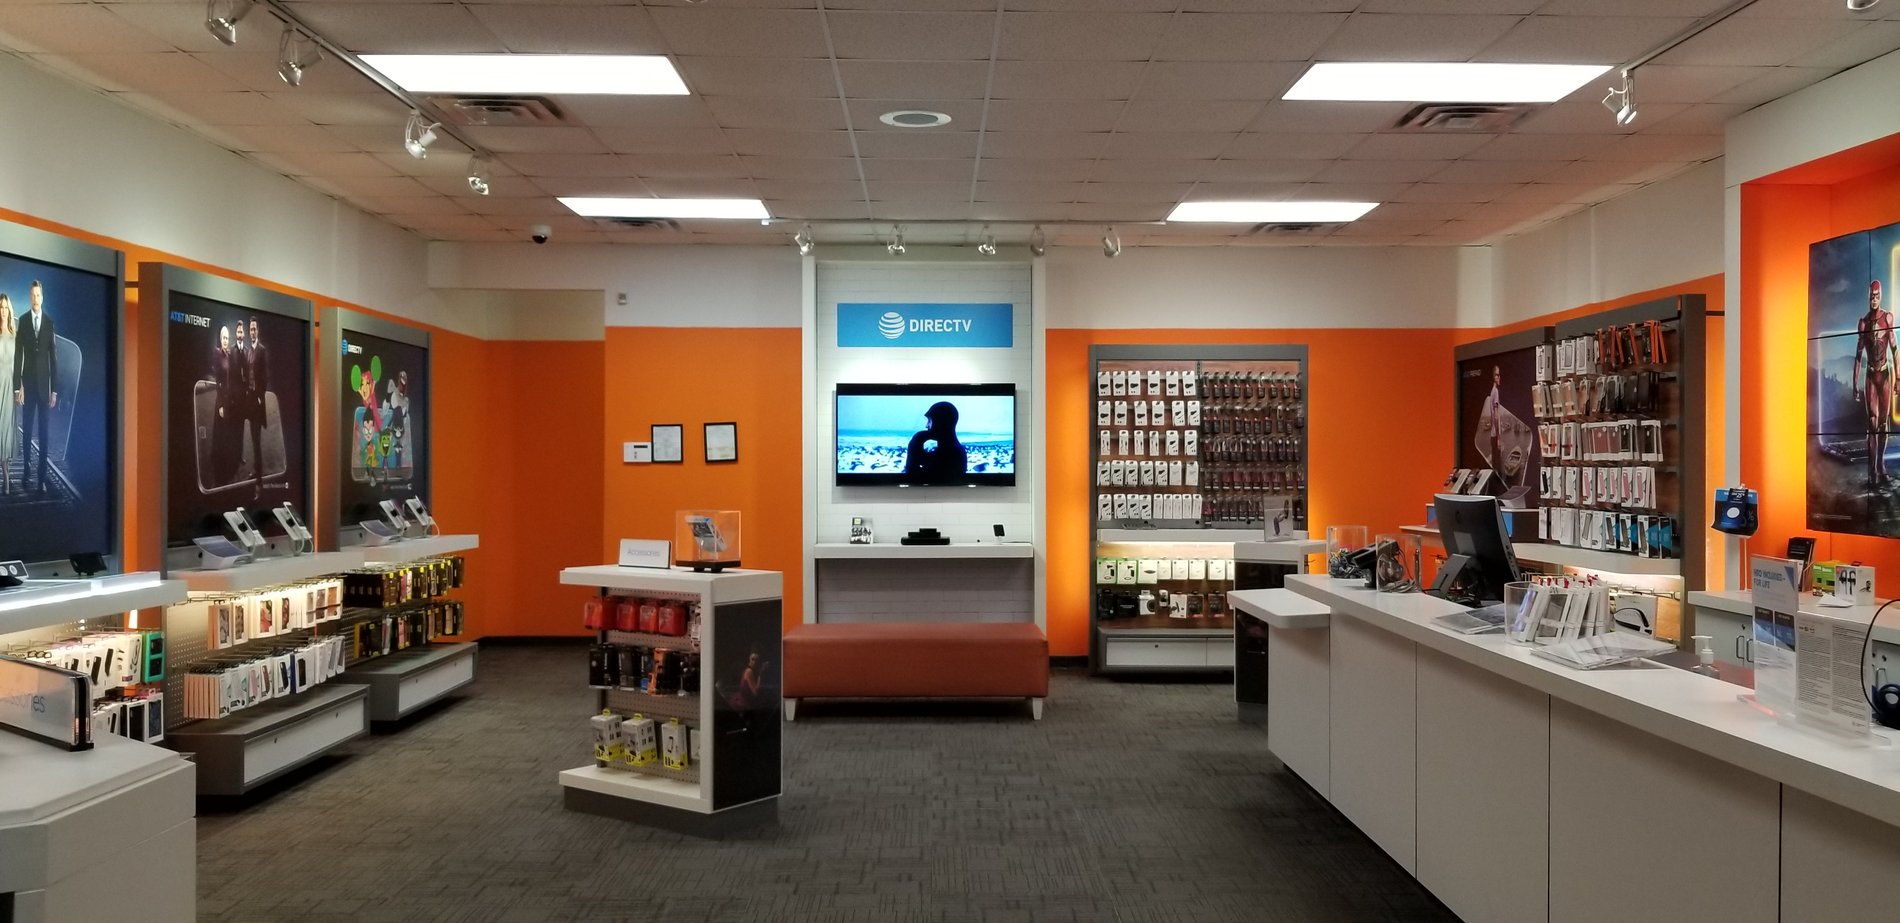 At T Store Perkins Road Baton Rouge La Iphone Samsung Deals